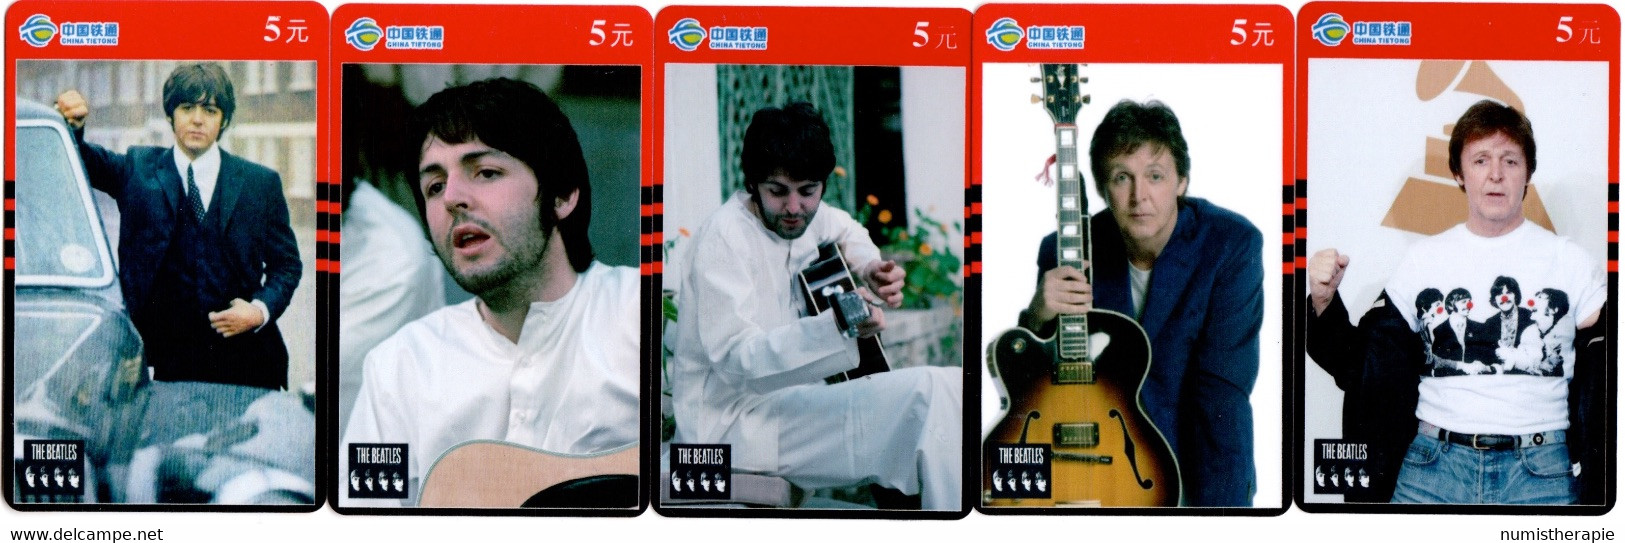 The Beatles Paul McCartney : Lot De 5 Télécartes Chinoises : Manuf. China Tietong - Musique